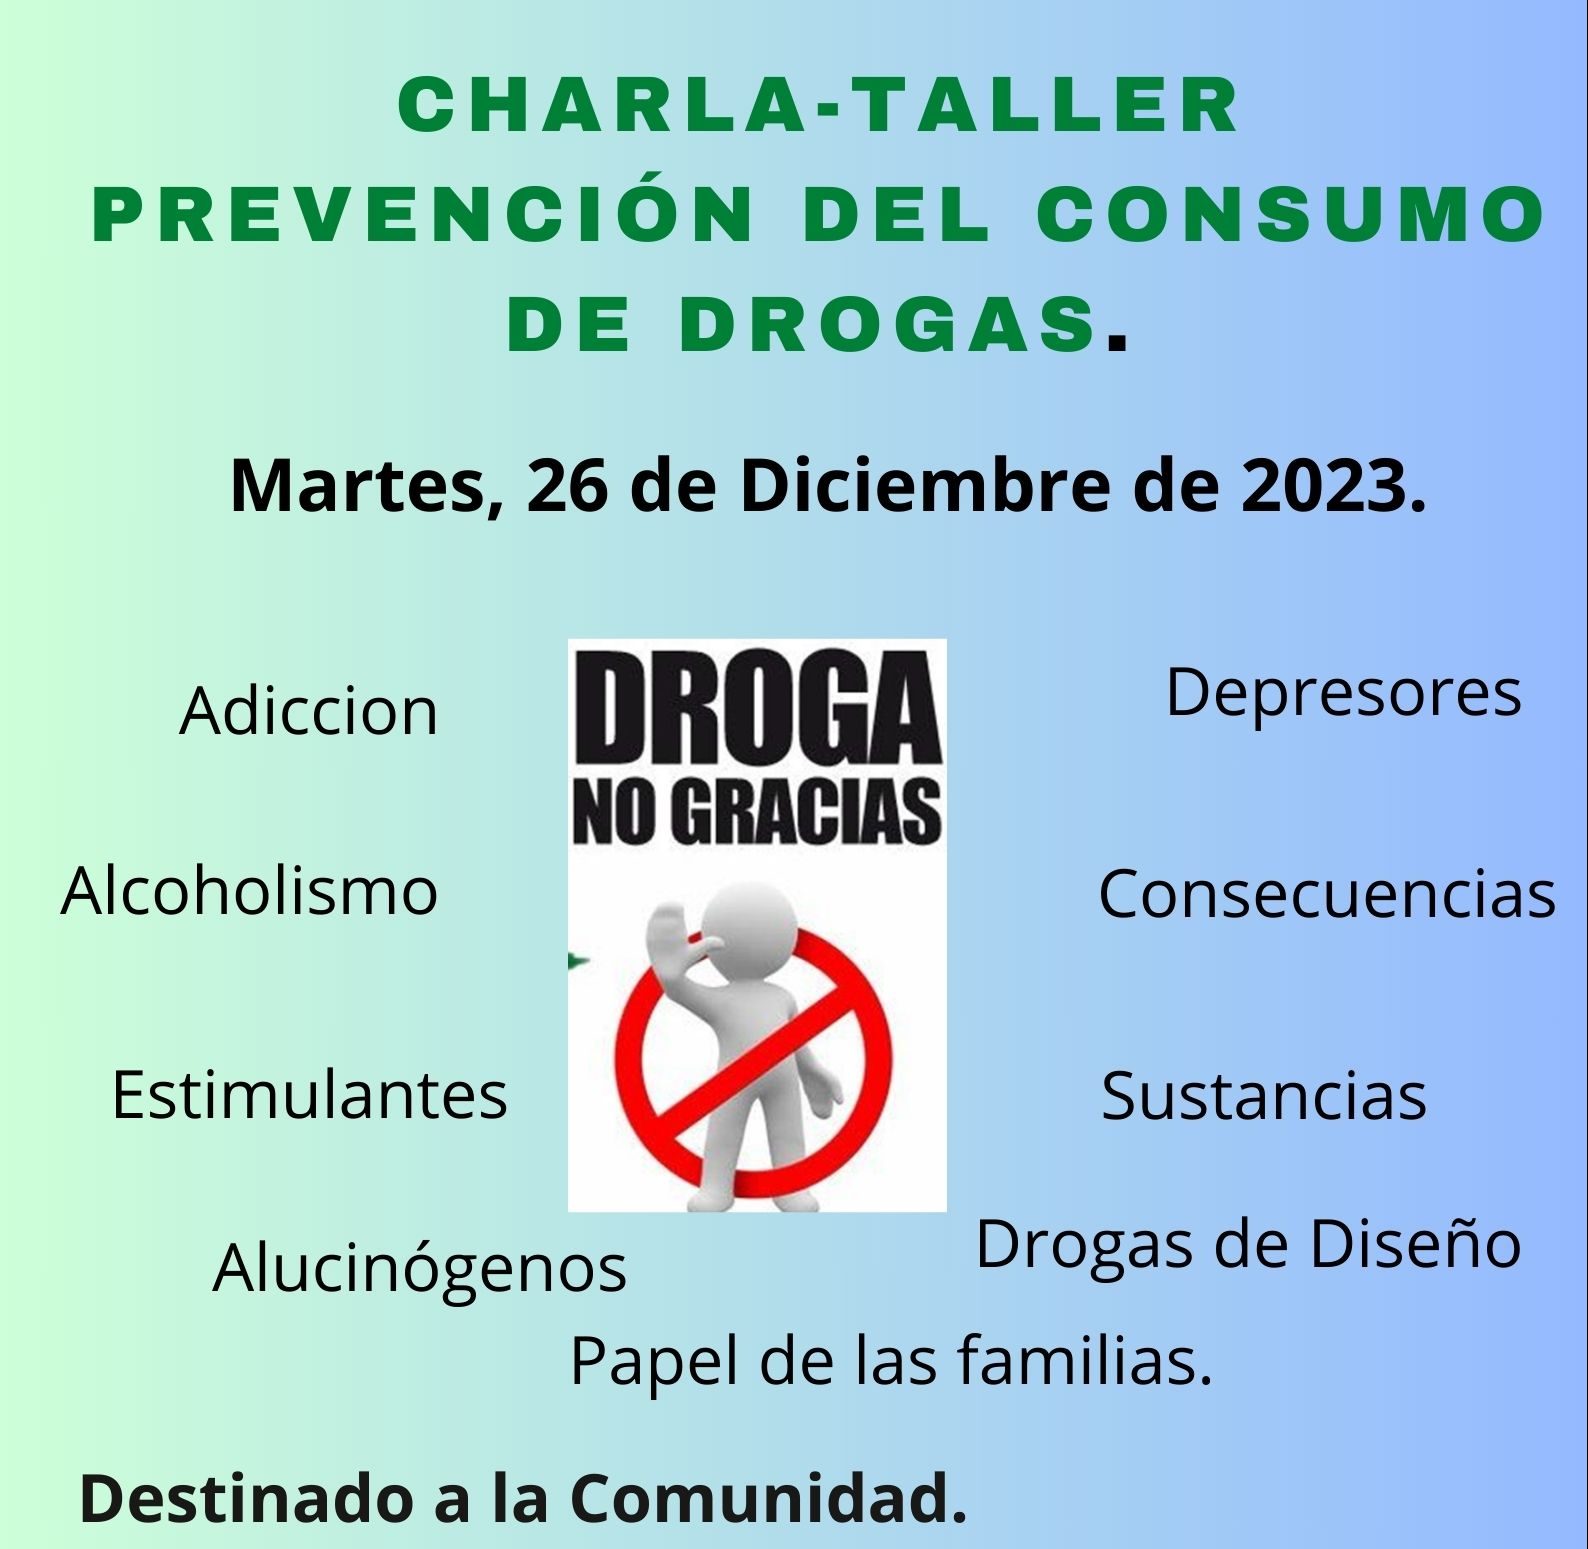 Charla-Taller "Prevención del Consumo de Drogas".